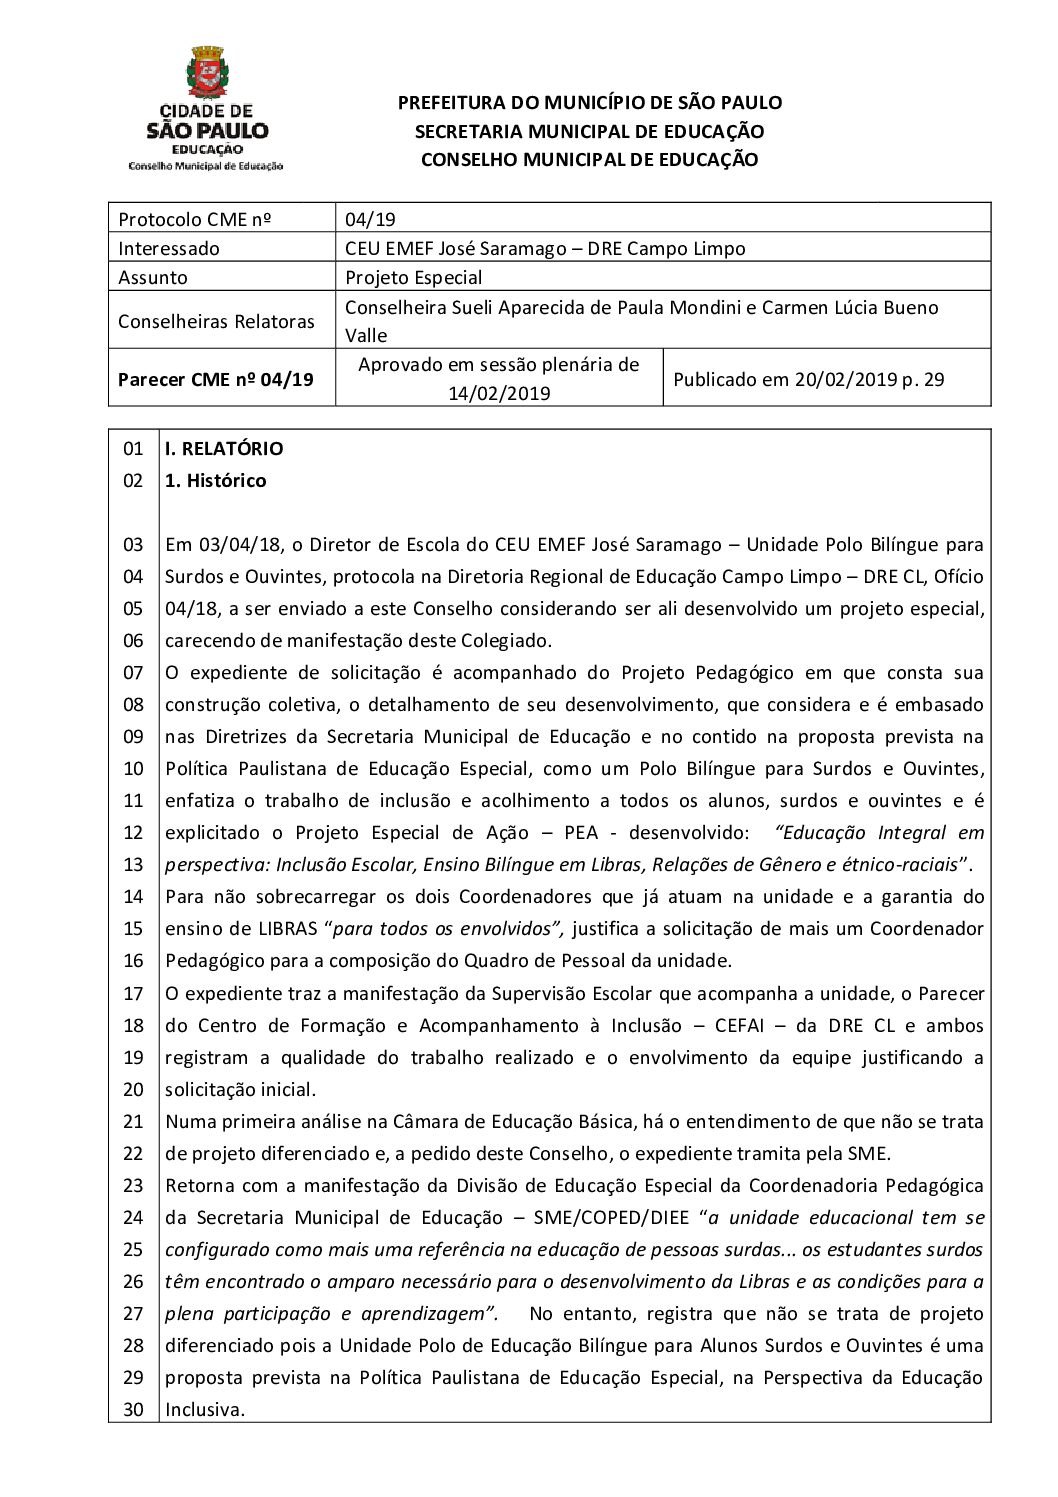 Parecer CME nº 04/2019 - CEU EMEF José Saramago (DRE Campo Limpo) - Projeto Especial